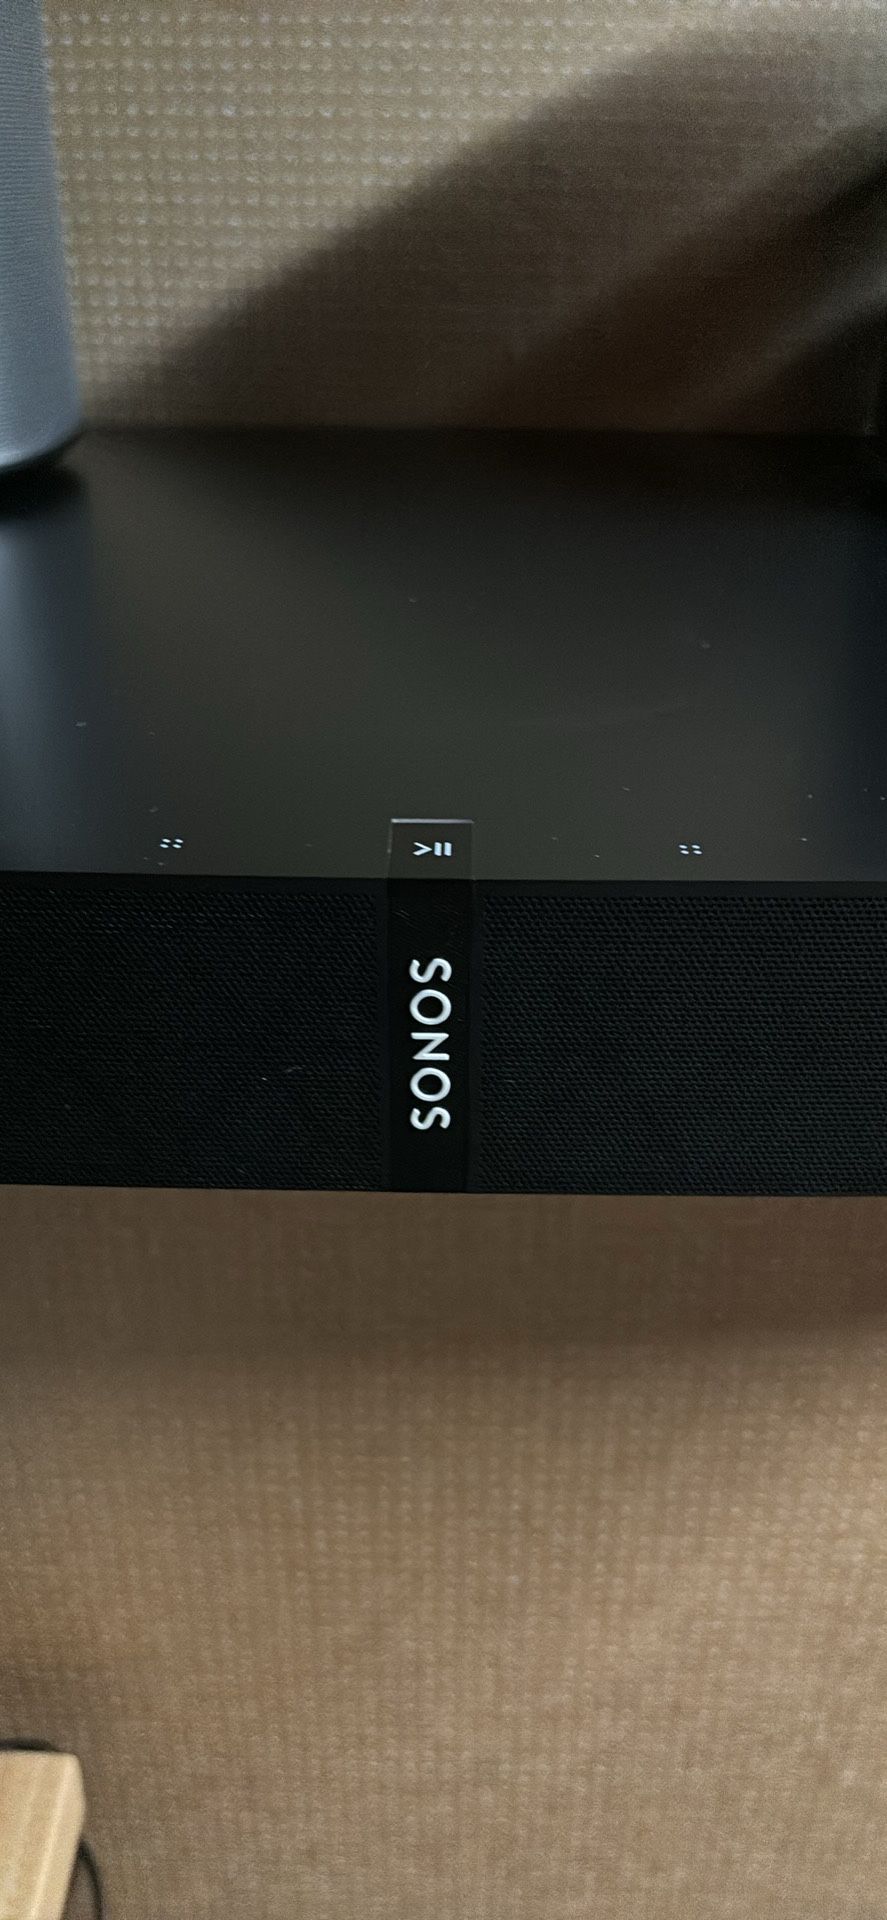 Sonos Surround Sound 